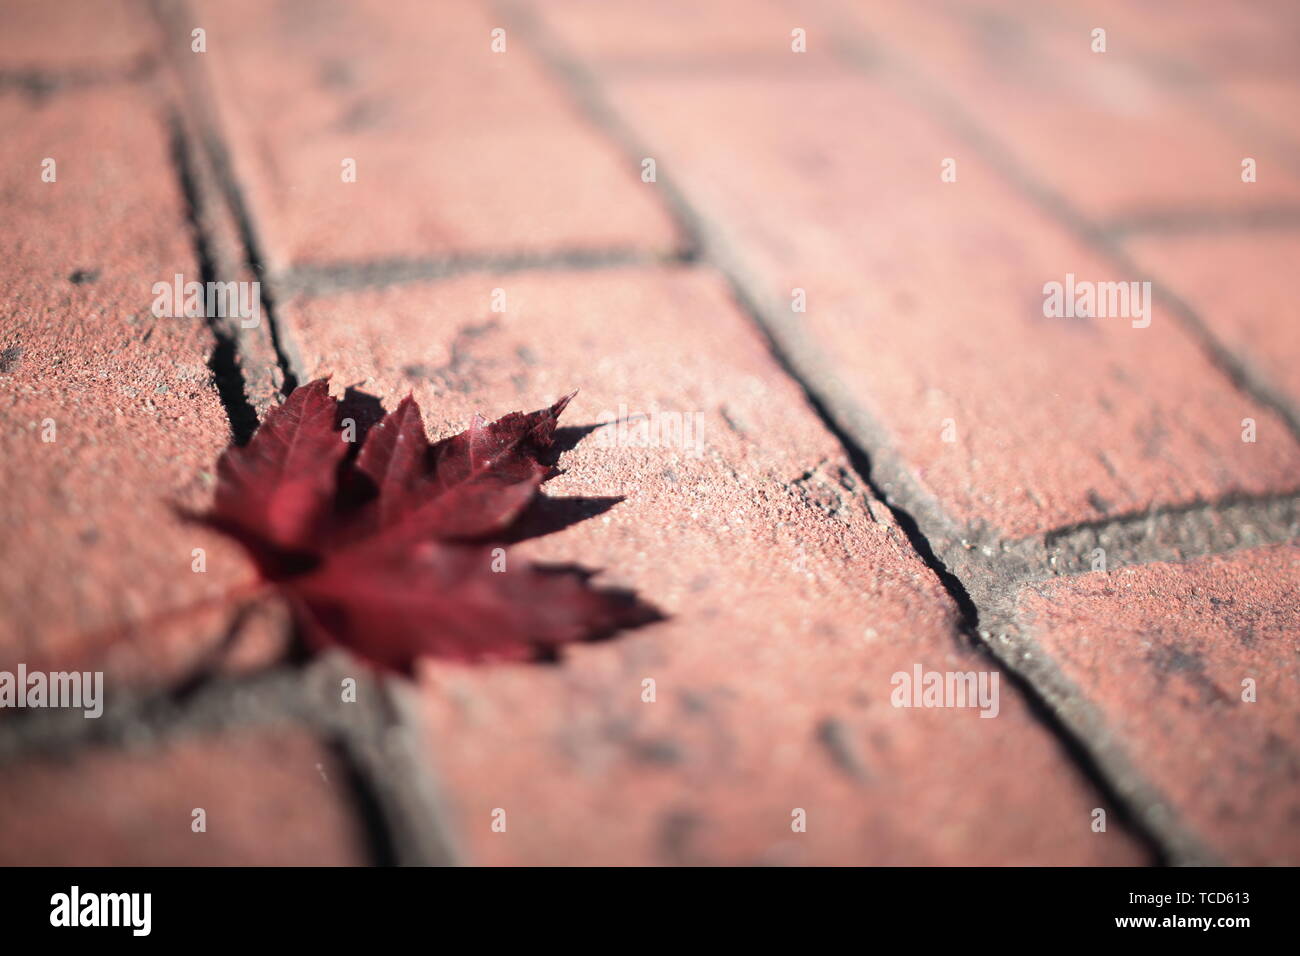 Nahaufnahme von einem roten Crimson King maple leaf auf einem Stein Gehweg Stockfoto